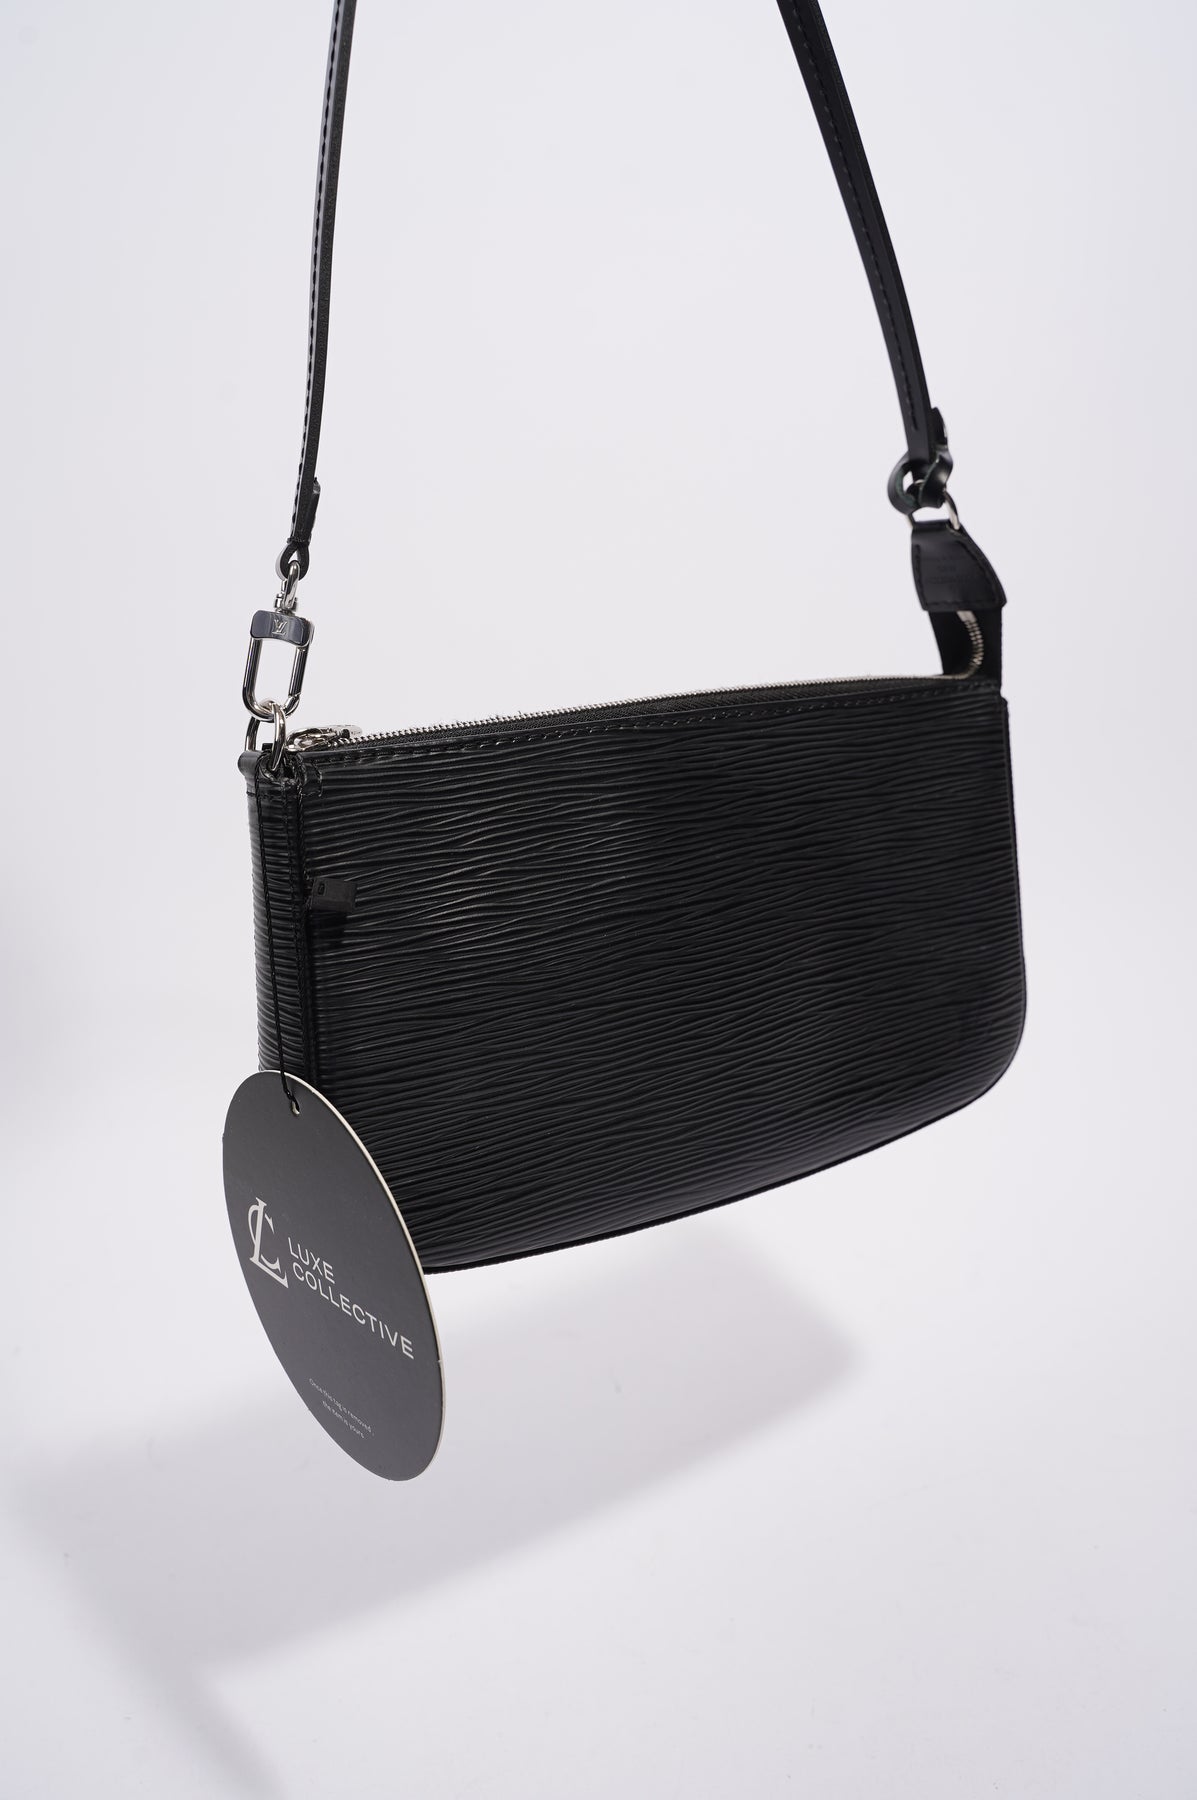 Pochette Accessories 24, Louis Vuitton. Black epi leat…